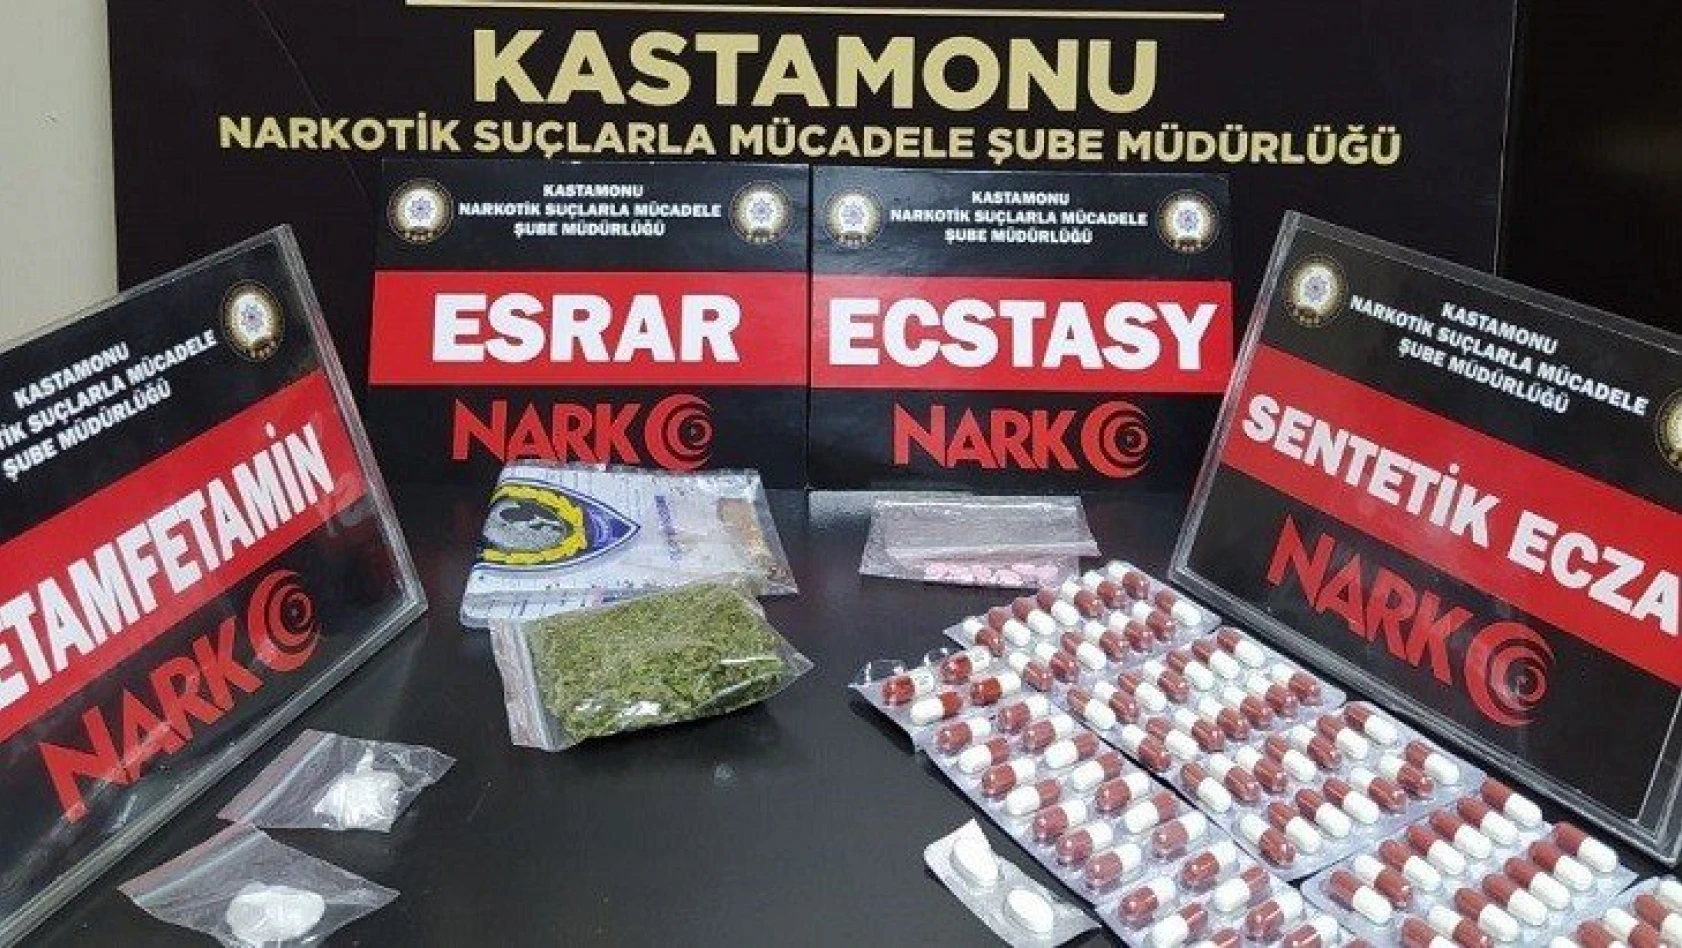 Kastamonu'da uyuşturucu ve kaçakçılık operasyonu : 4 kişi yakalandı